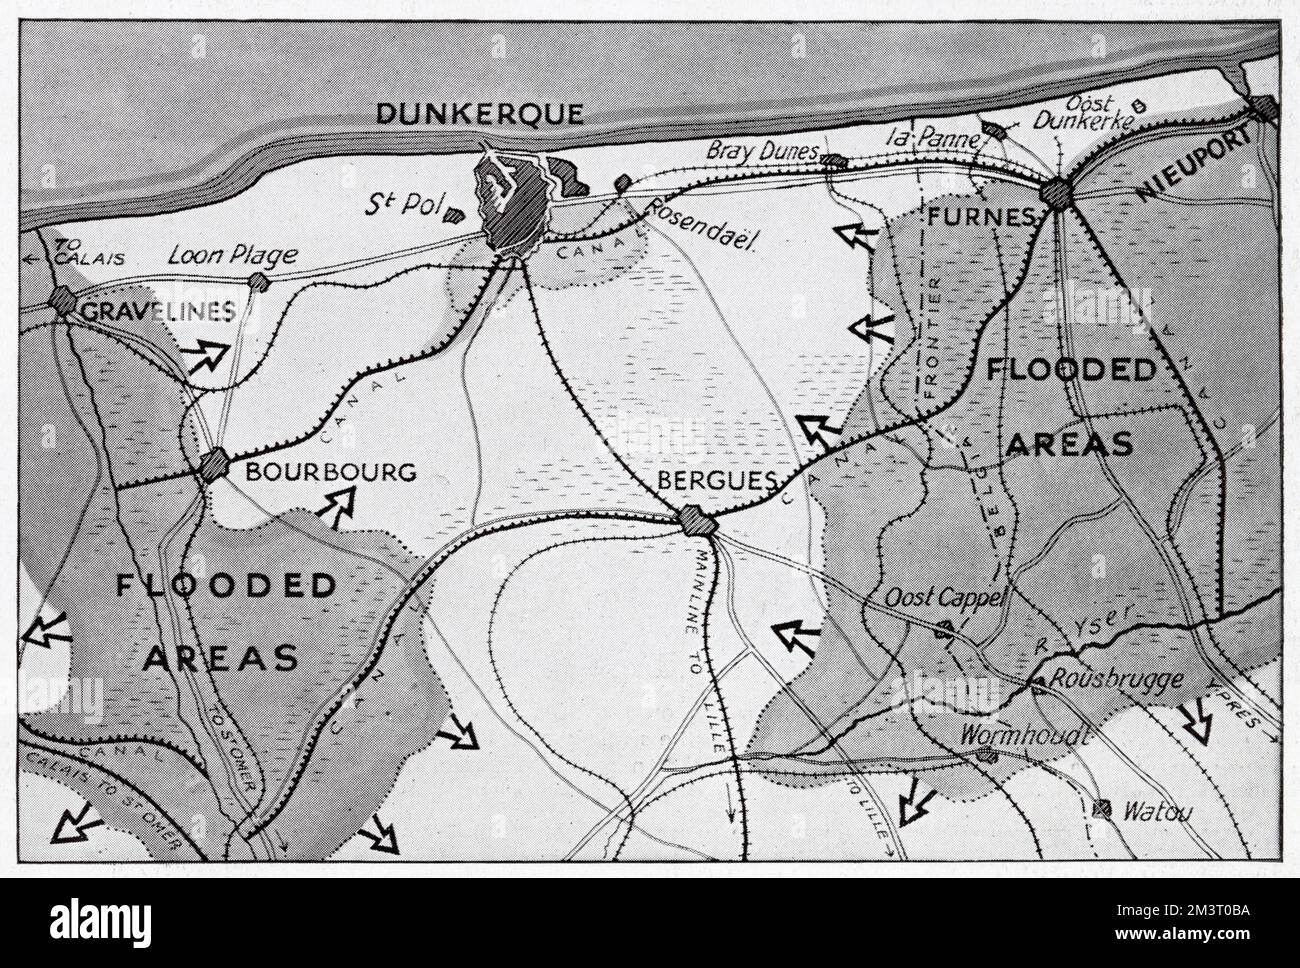 Karte des Gebiets Dünkirchen in Nordfrankreich während der Evakuierung, auf der zwei überflutete Gebiete tiefliegender Wiesen zu sehen sind, die den Rückzug der Alliierten unterstützten. Datum: 1940 Stockfoto